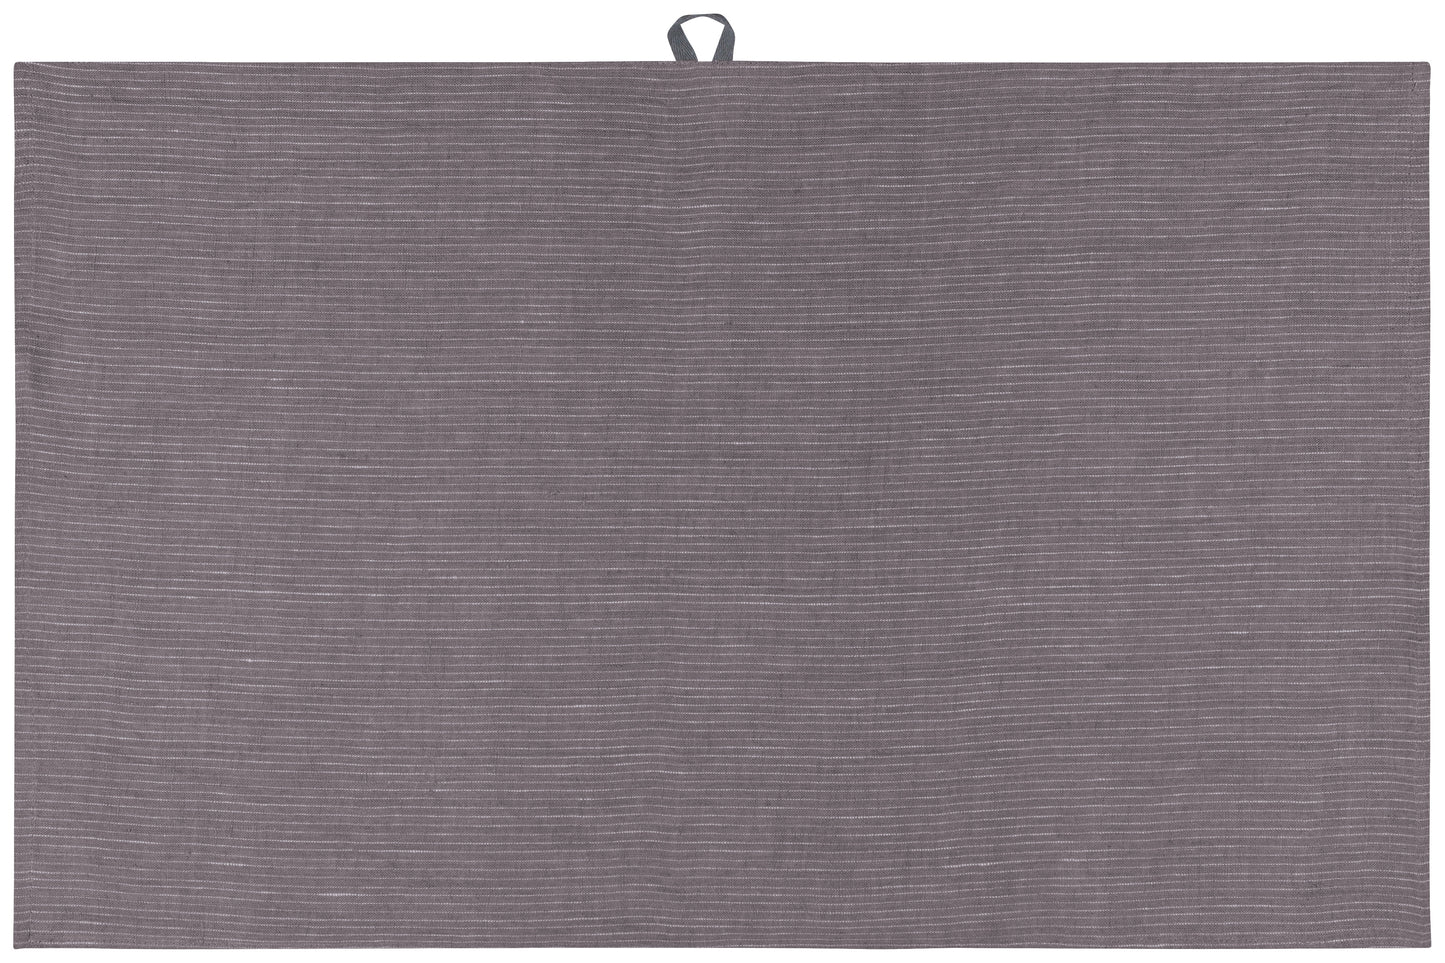 Pinstripe Linen Dishtowel - Dark Gray